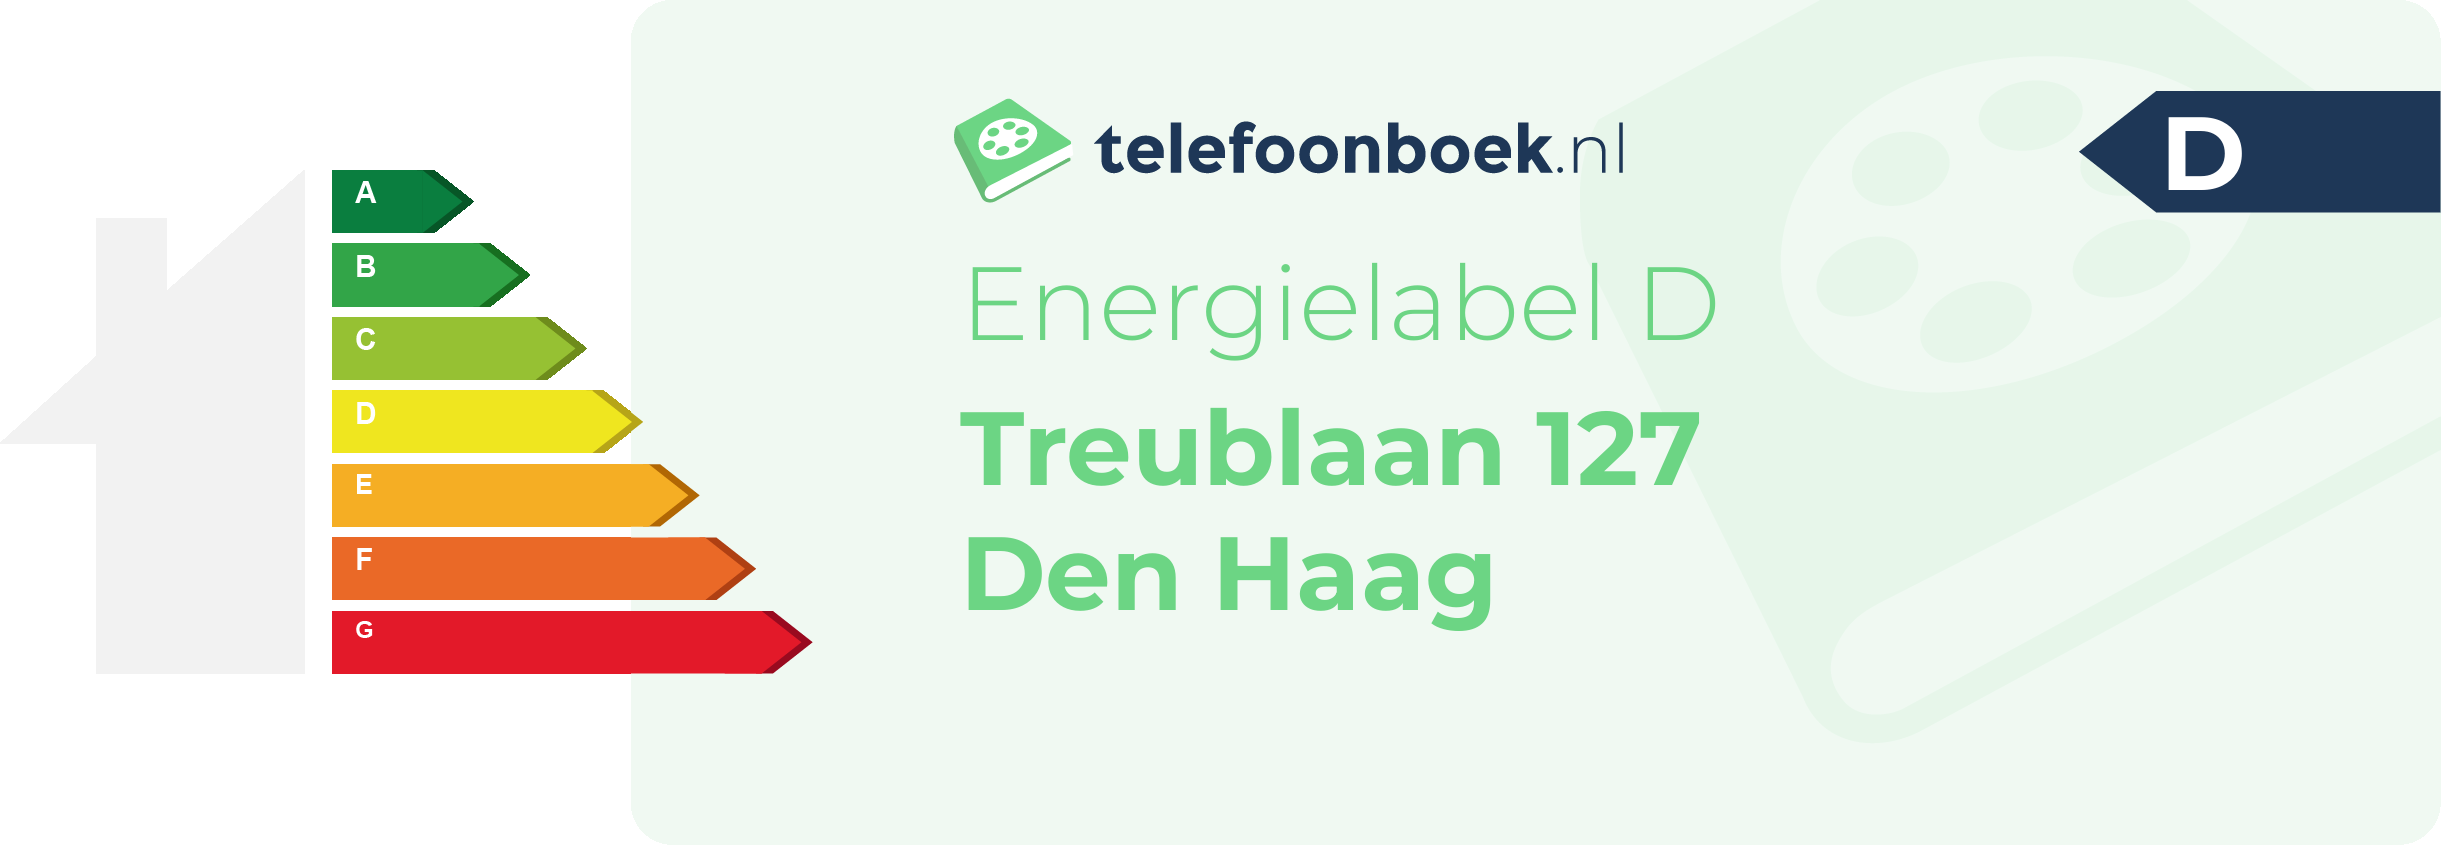 Energielabel Treublaan 127 Den Haag